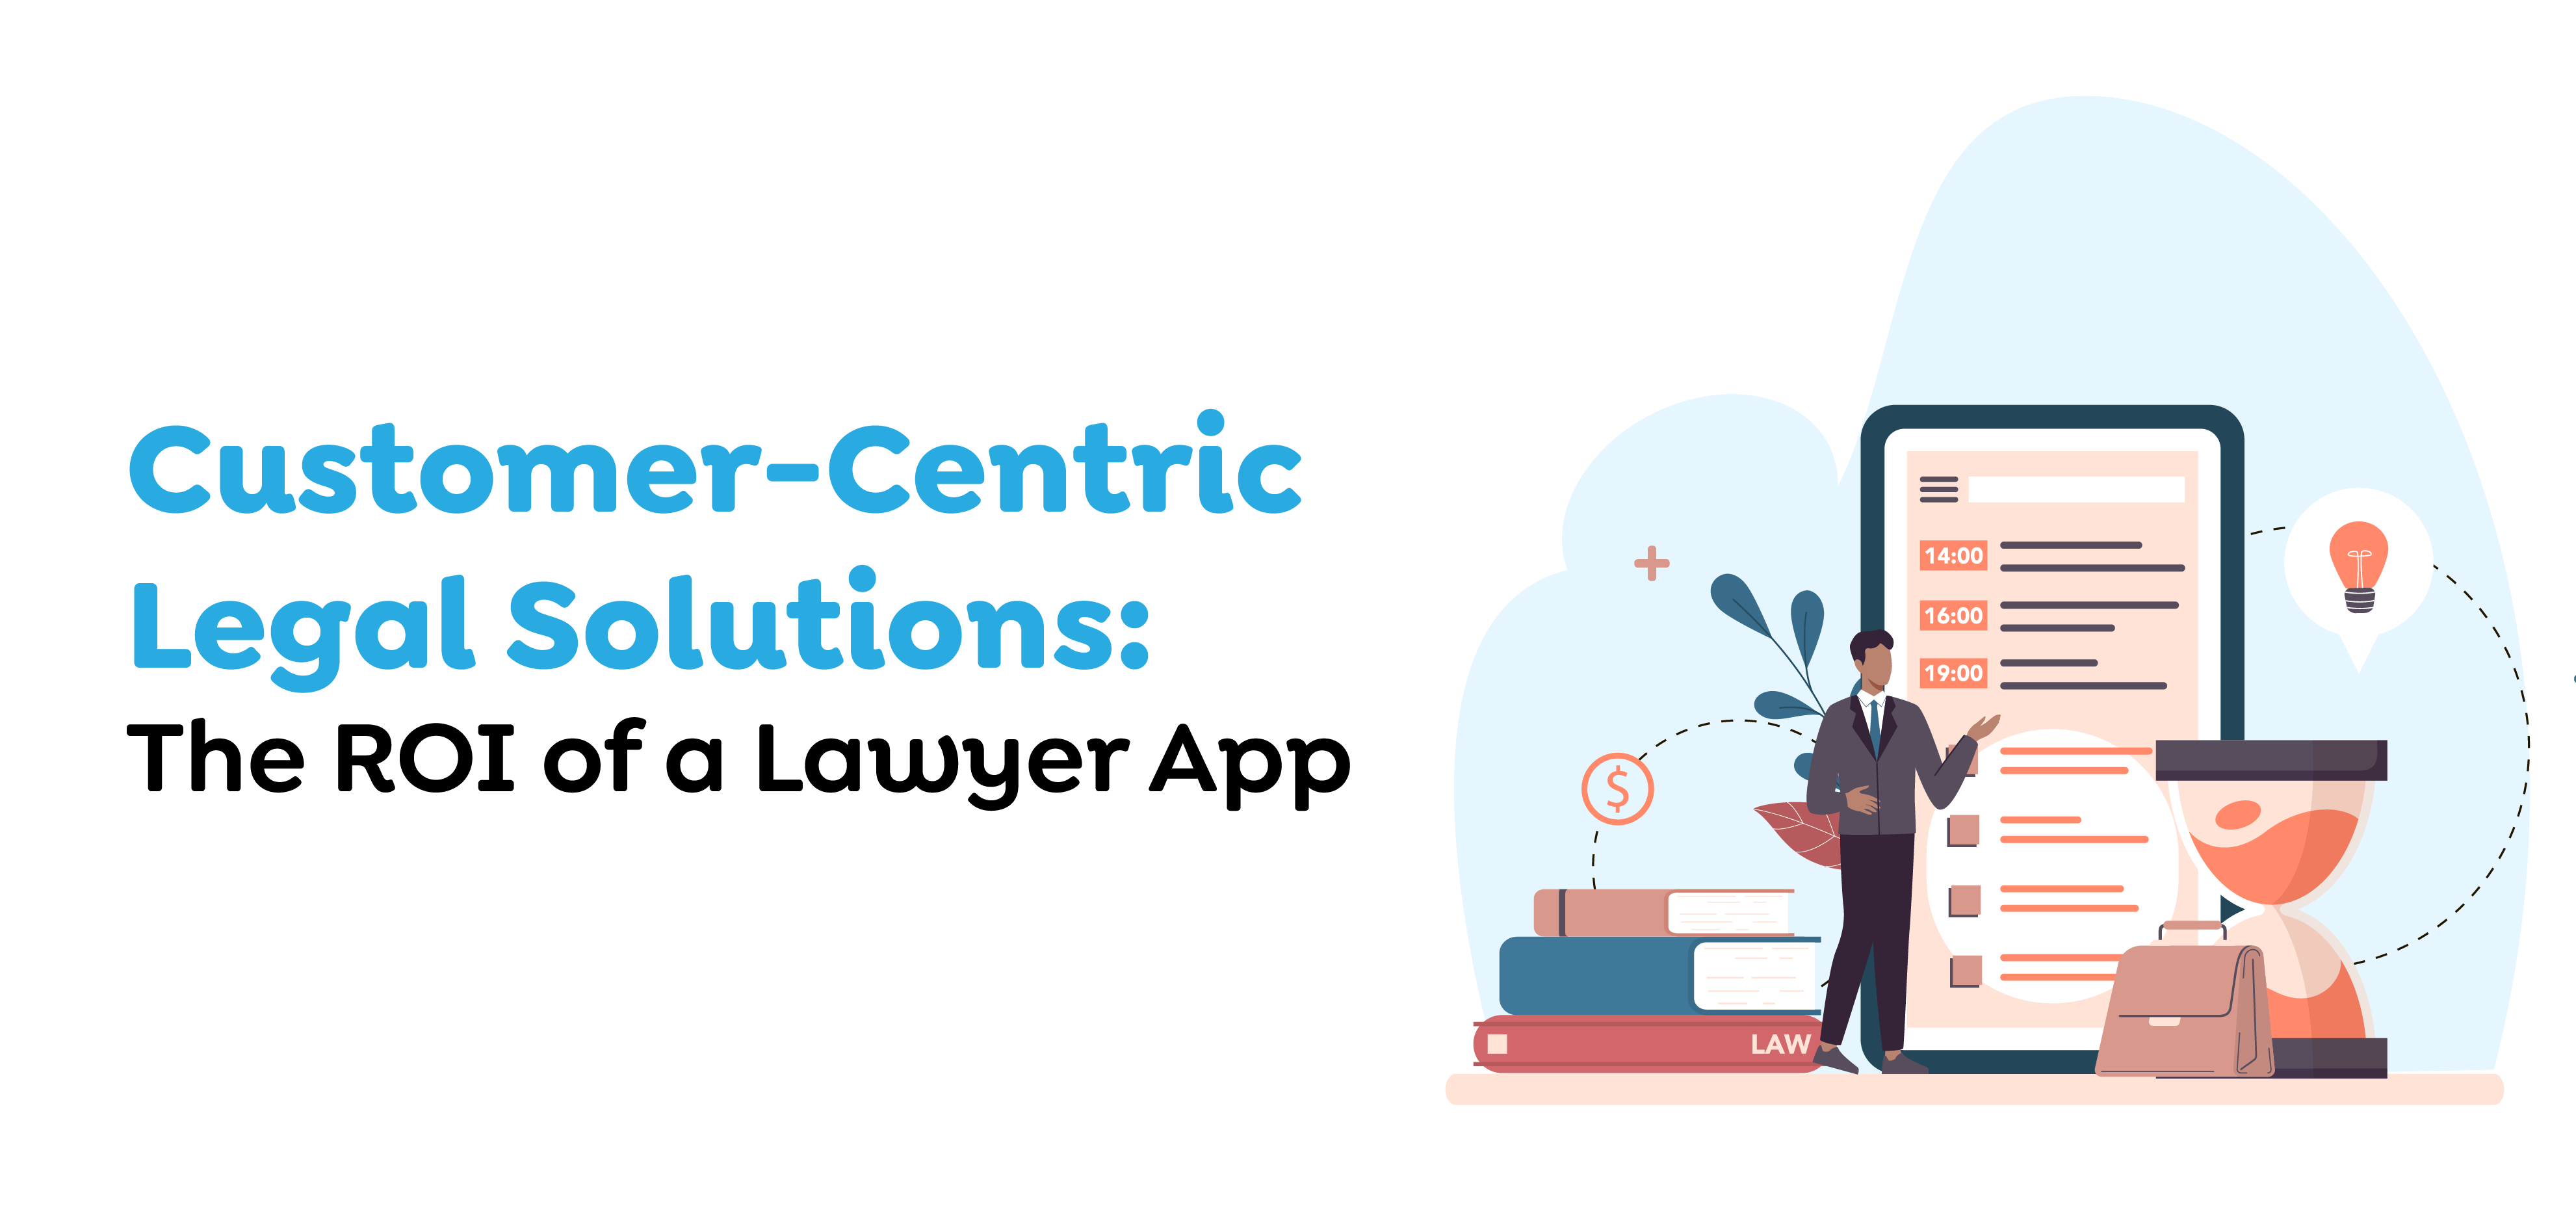 Lawyer App